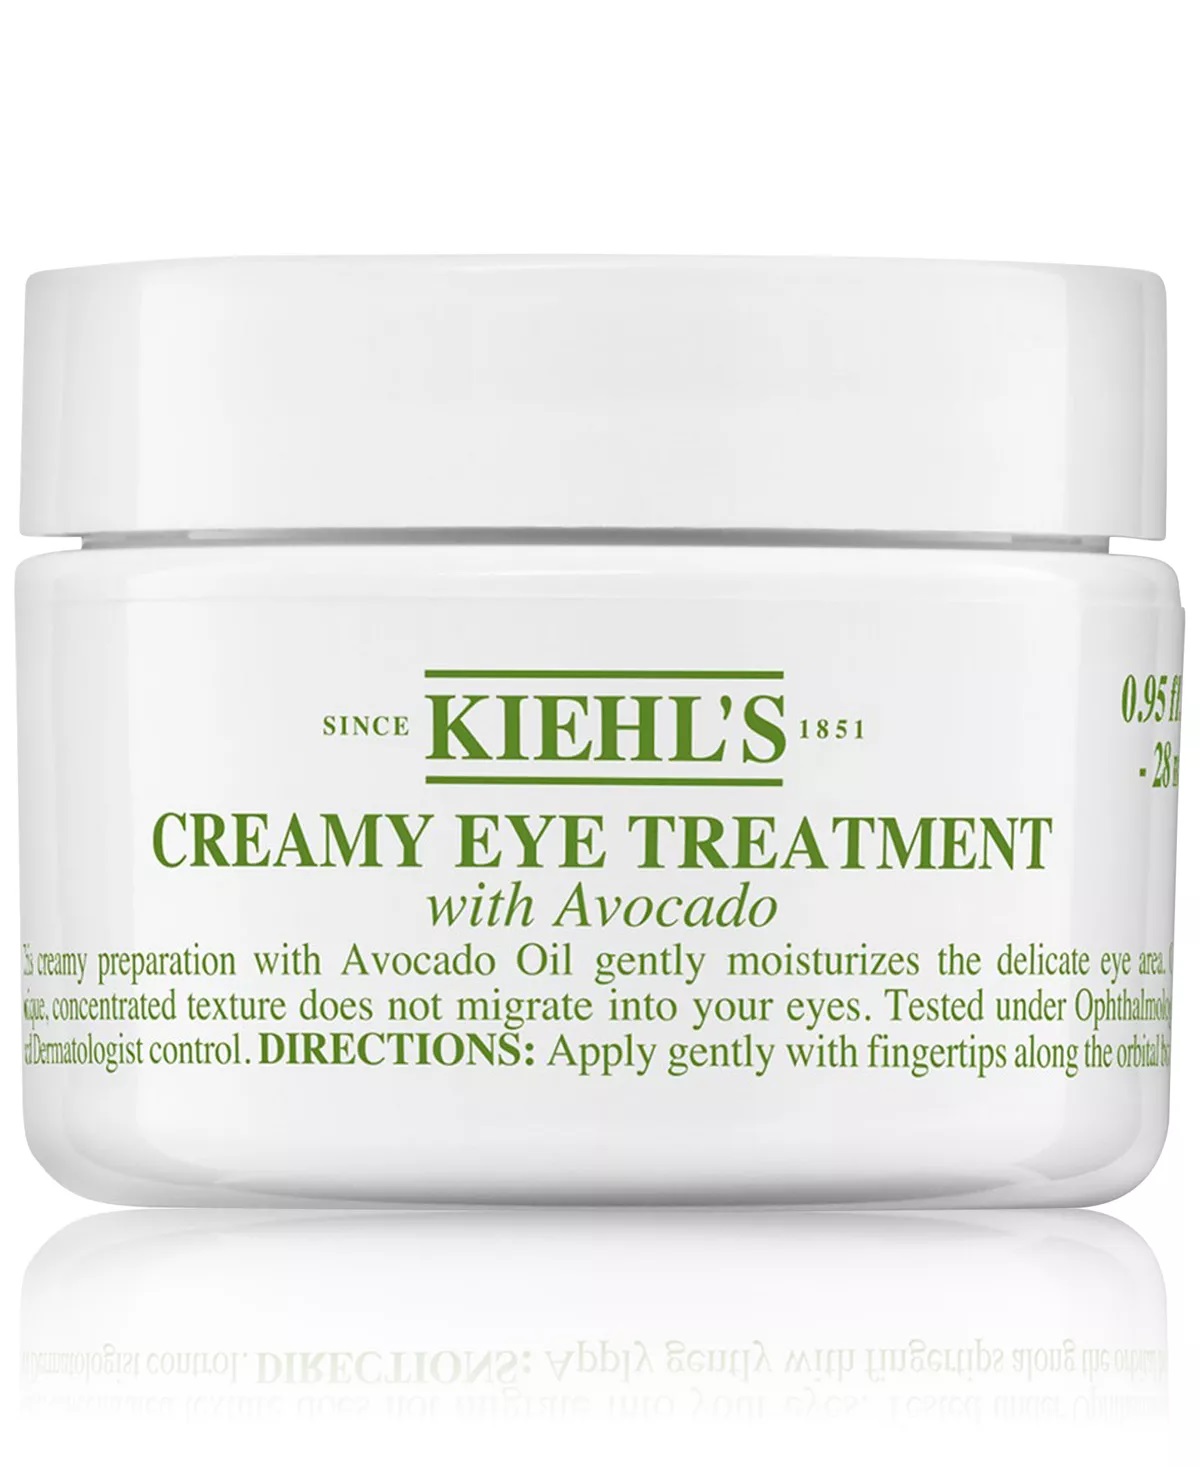 KIEHL'S SINCE 1851 Creamy Eye Treatment With Avocado, 0.95-oz.